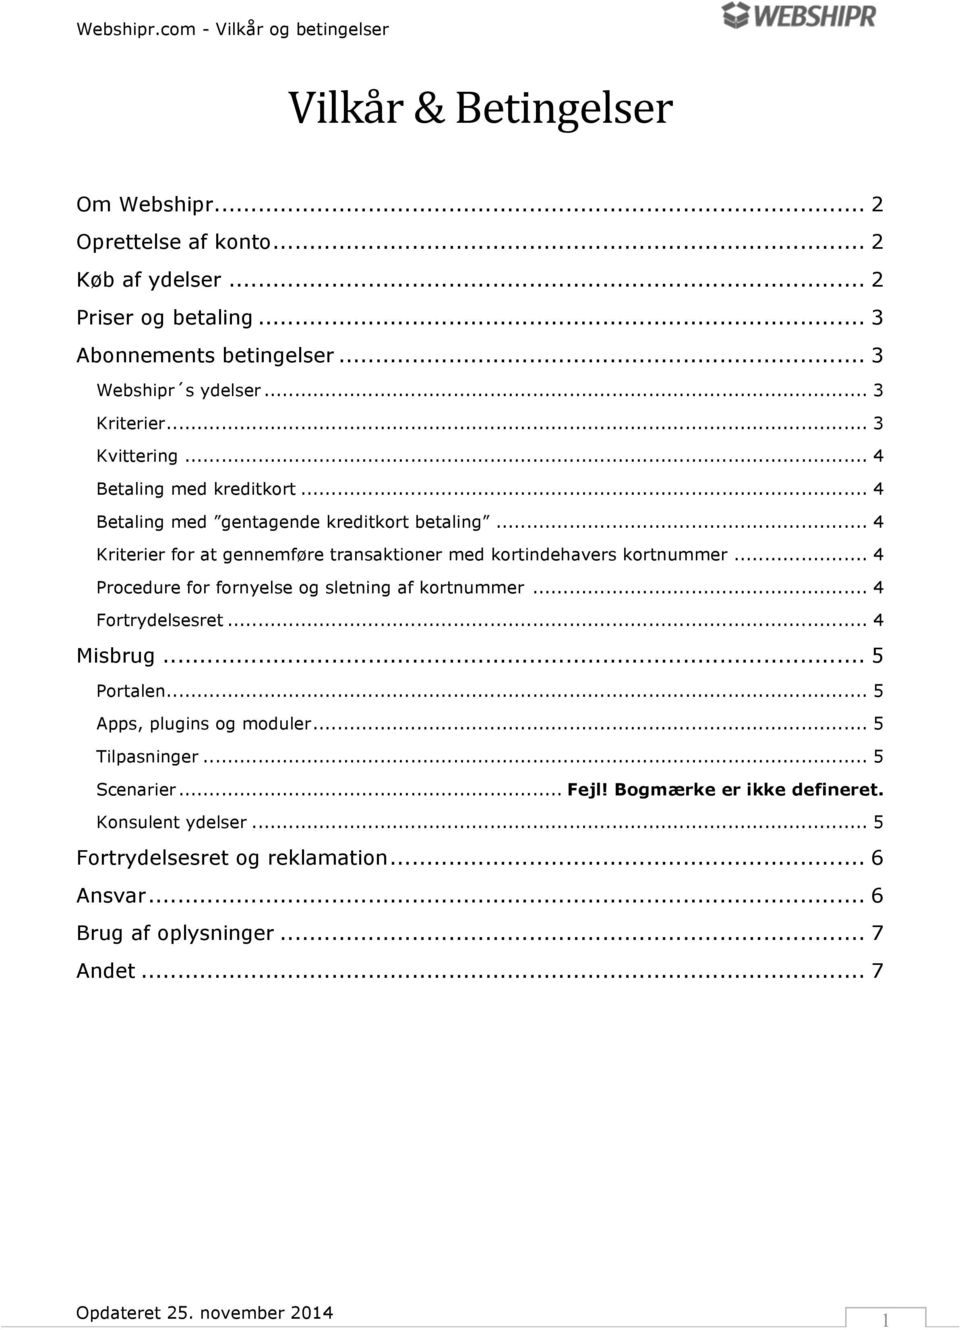 Vilkår & Betingelser - PDF Gratis download